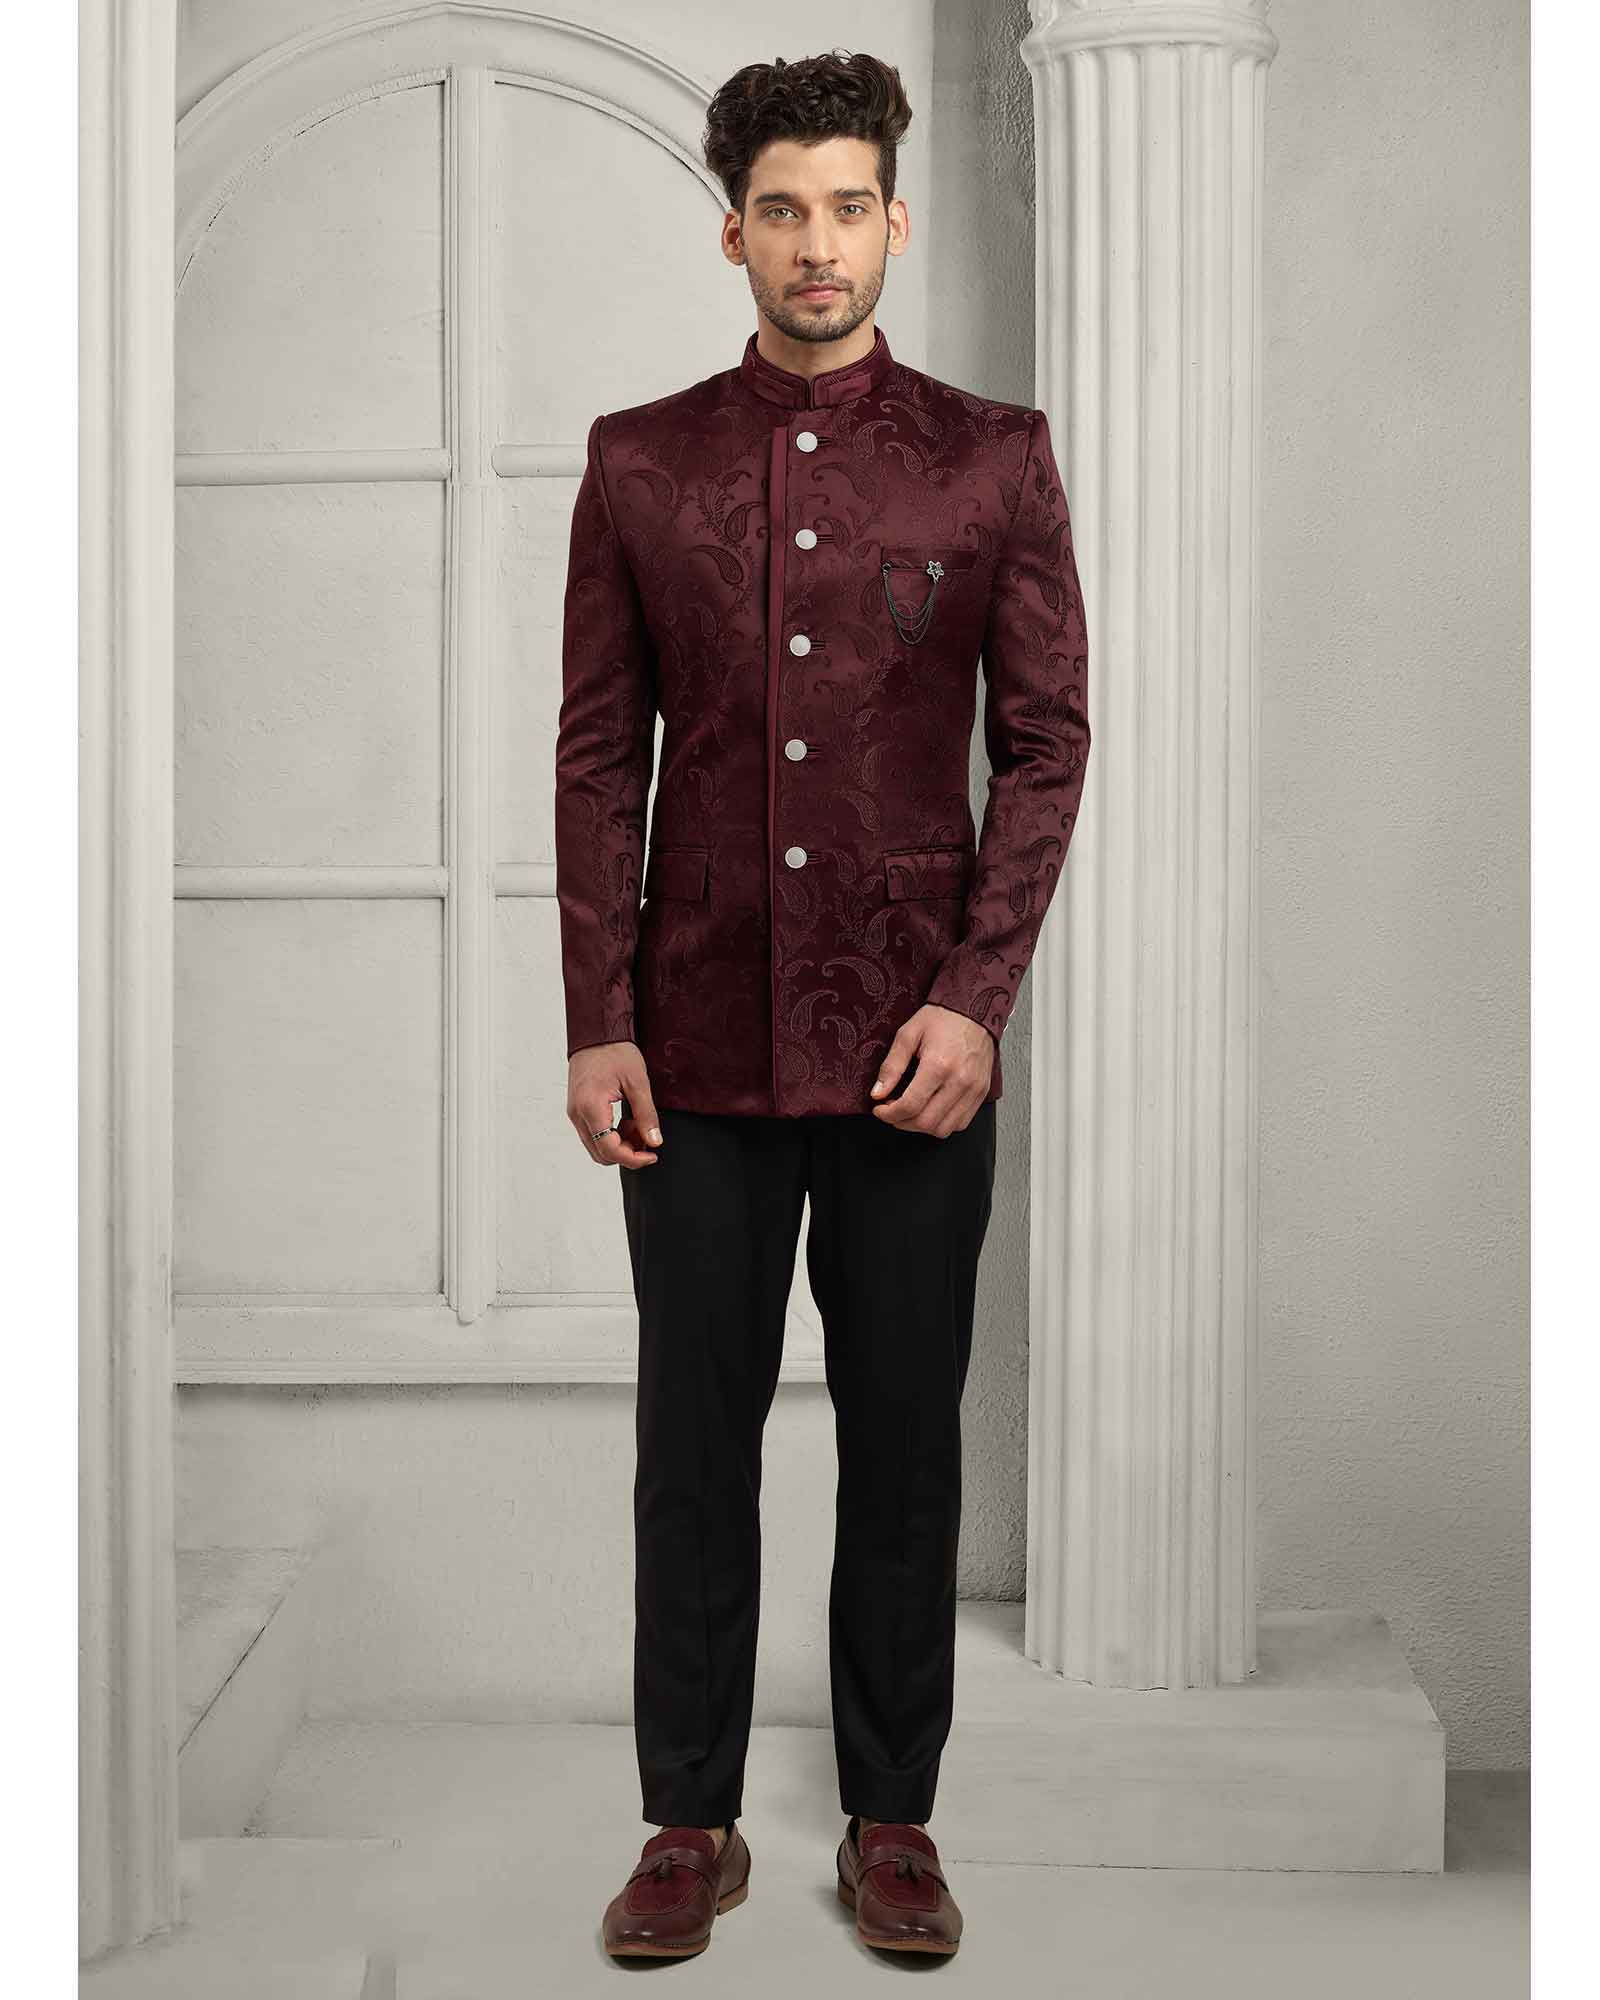 Festive Wear Jodhpuri Suit For Men